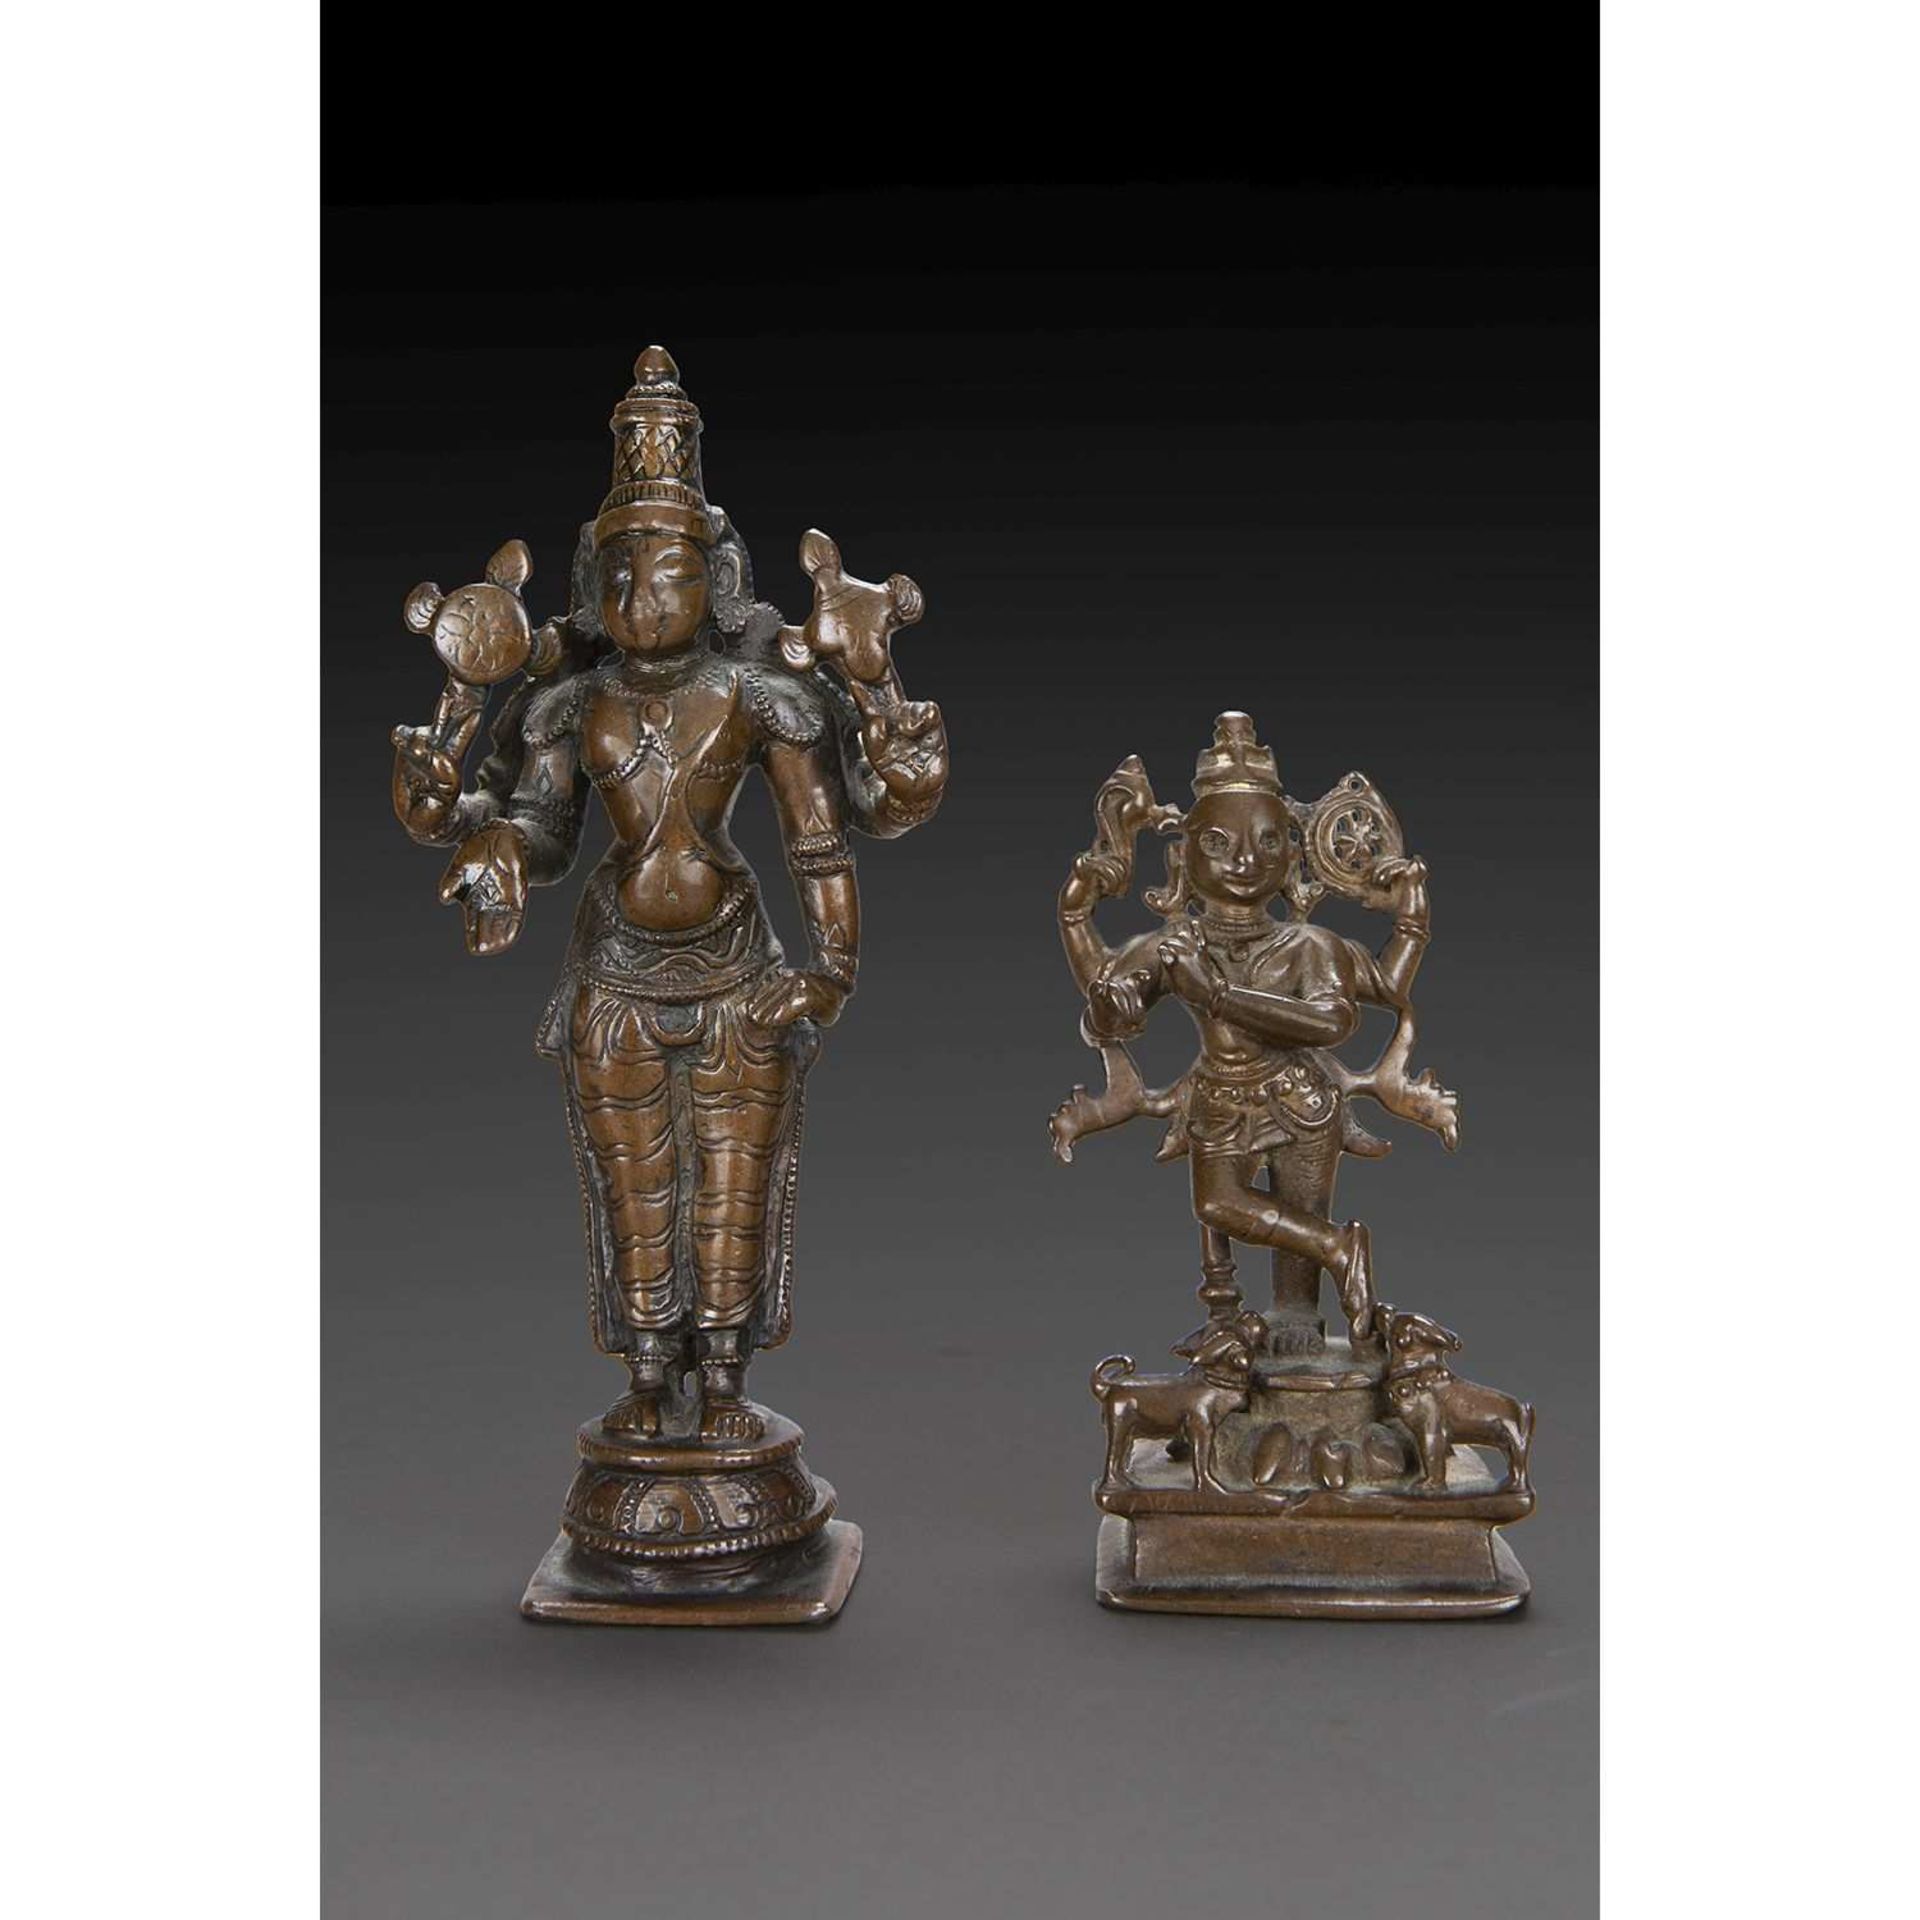 LOT DE DEUX STATUETTES en bronze de patine brune, représentant Vishnu debout, à quatre bras tenant